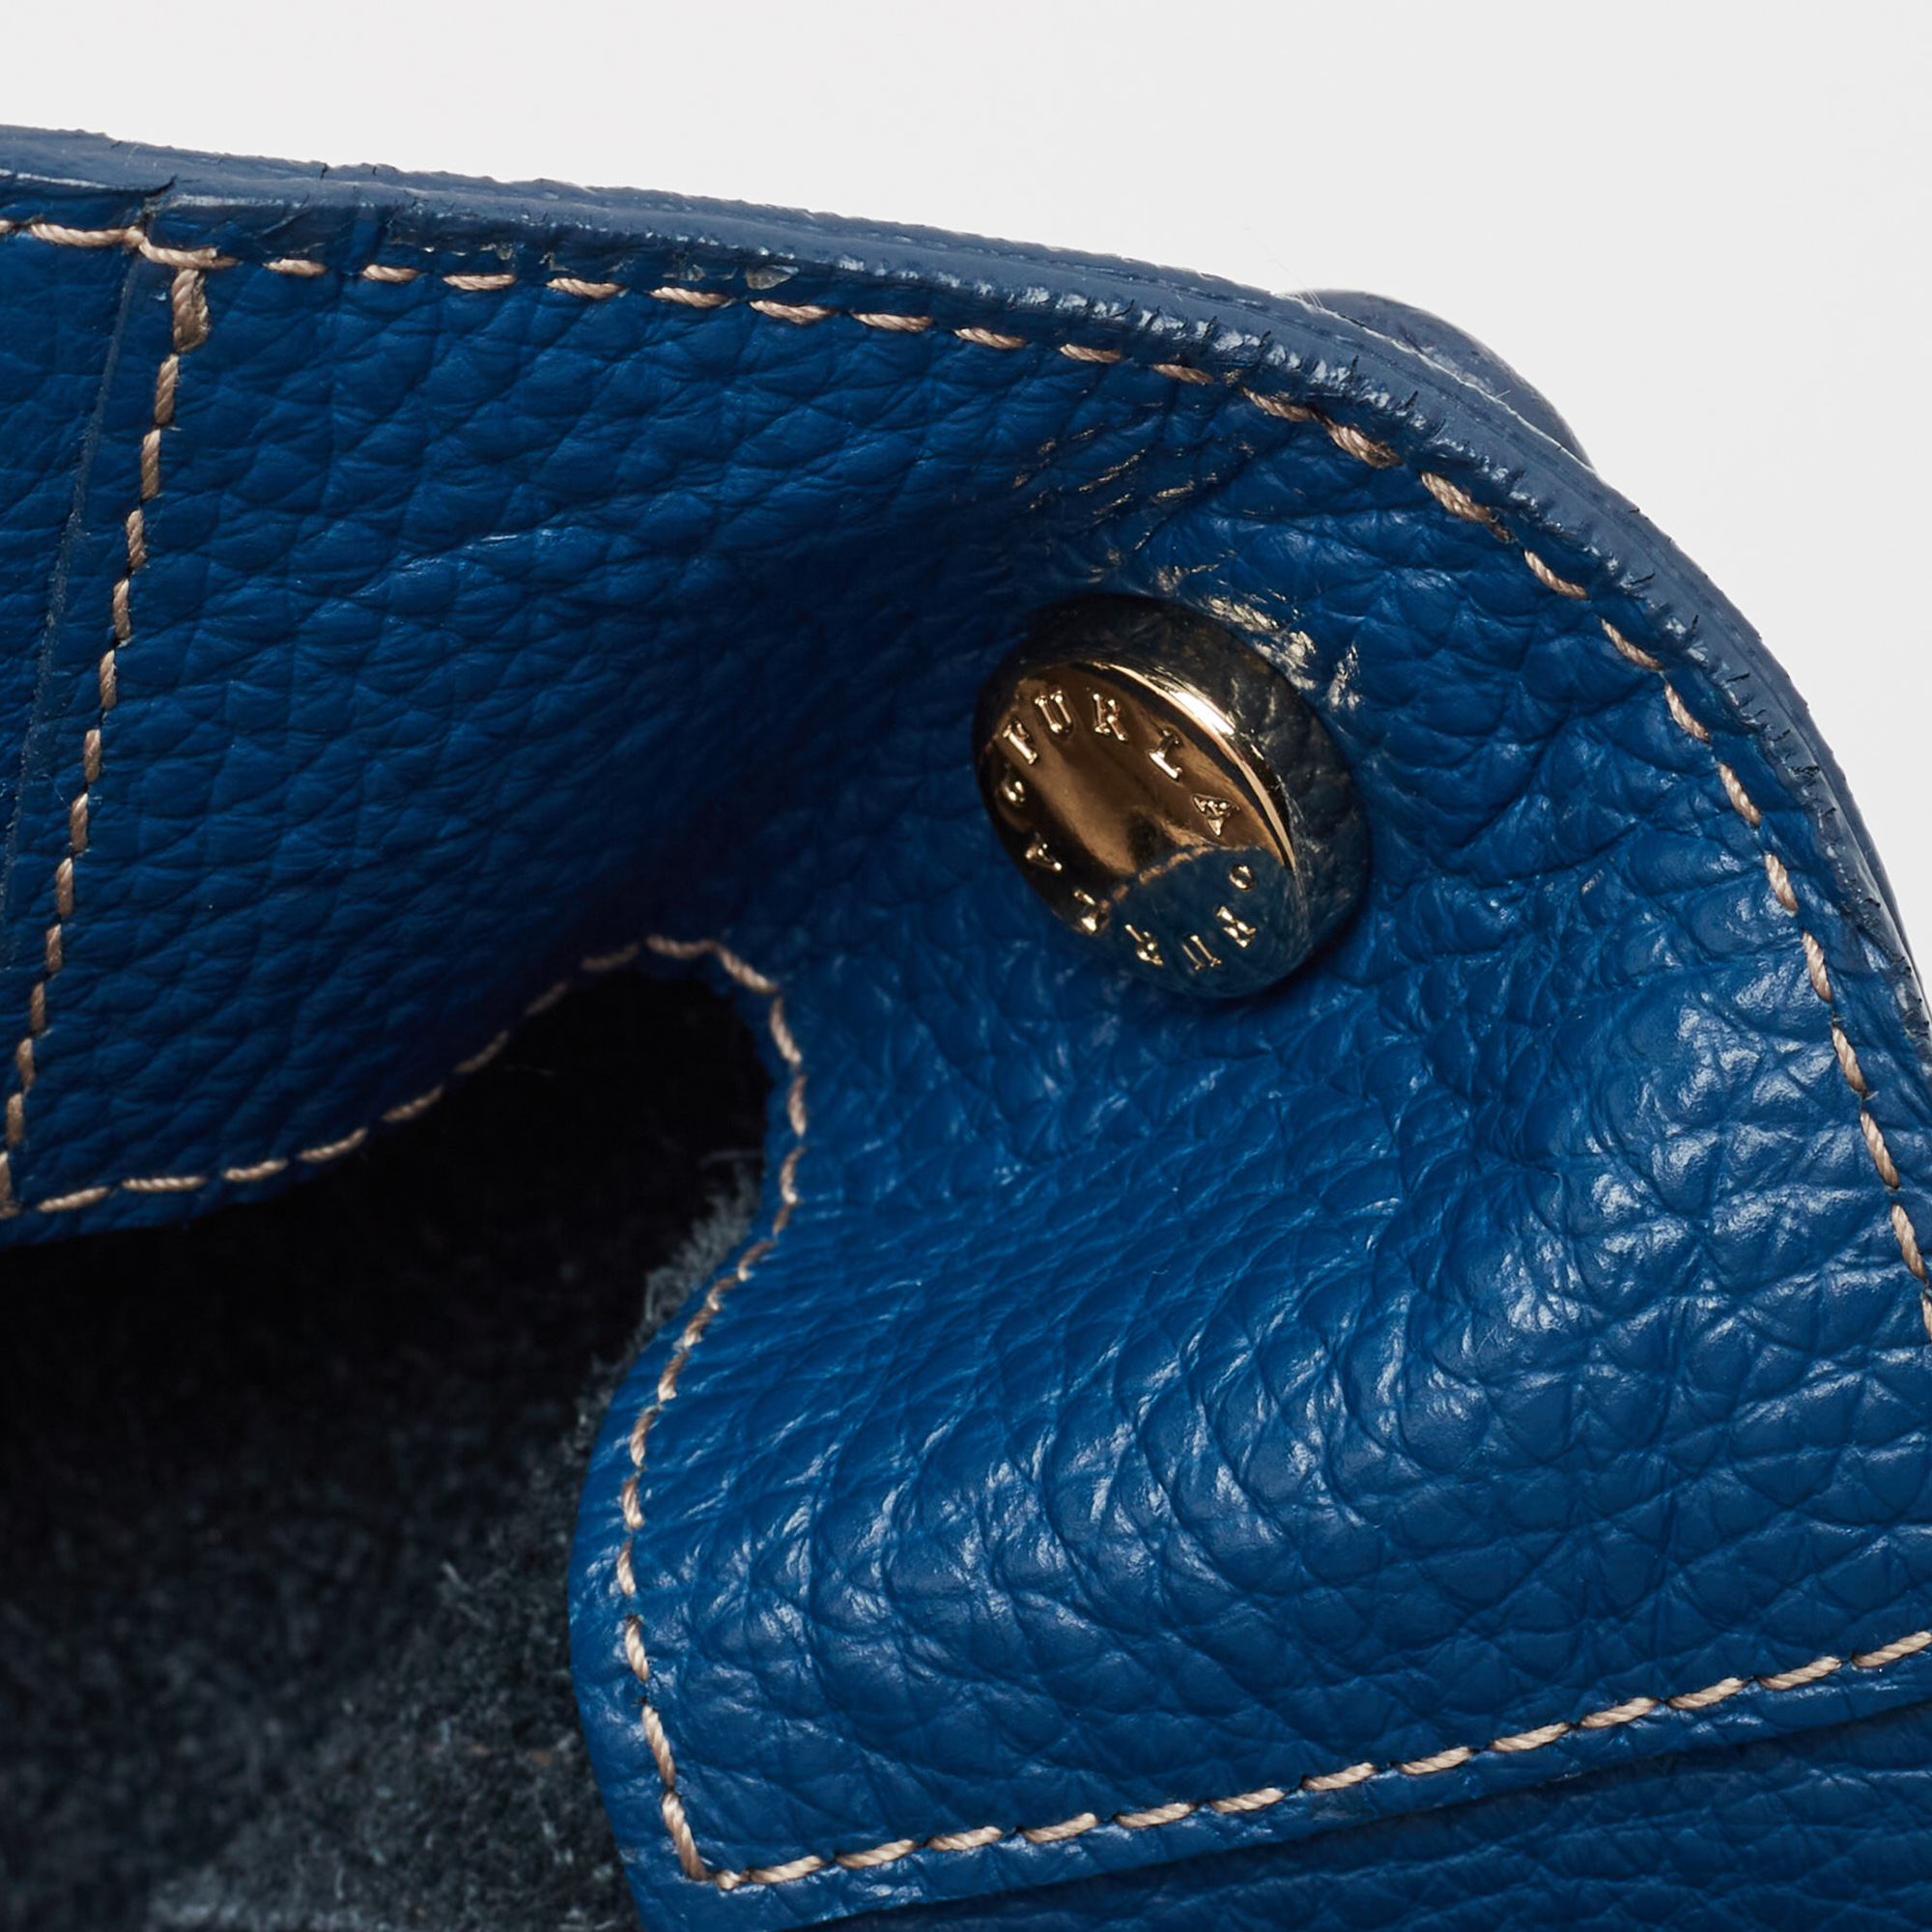 Furla Blue Leather Front Pocket Bucket Bag